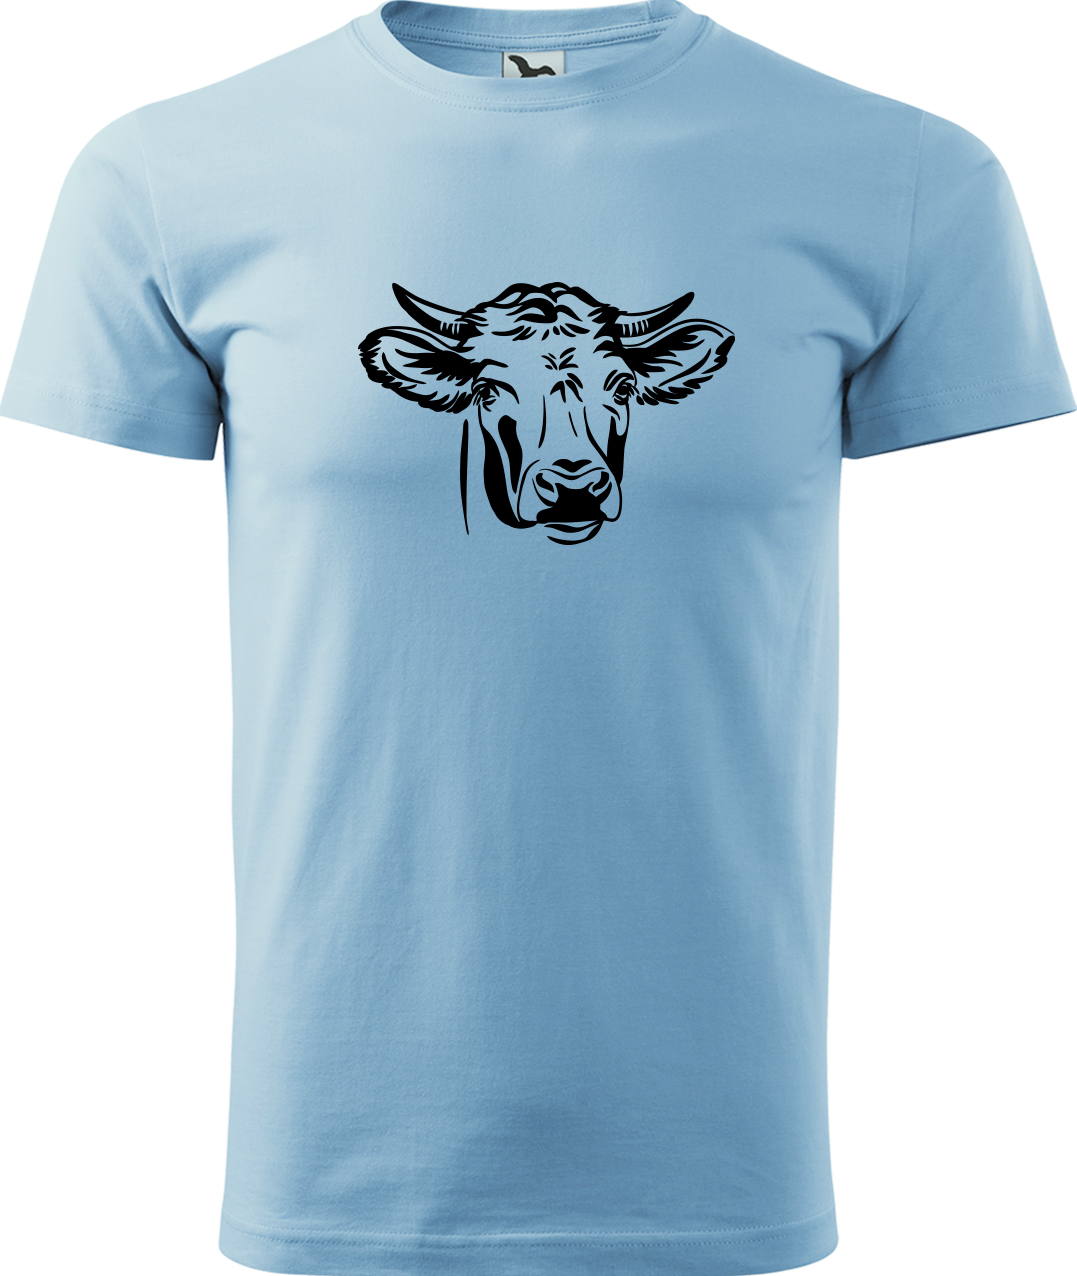 Pánské tričko s krávou - Hlava krávy Velikost: M, Barva: Nebesky modrá (15), Střih: pánský